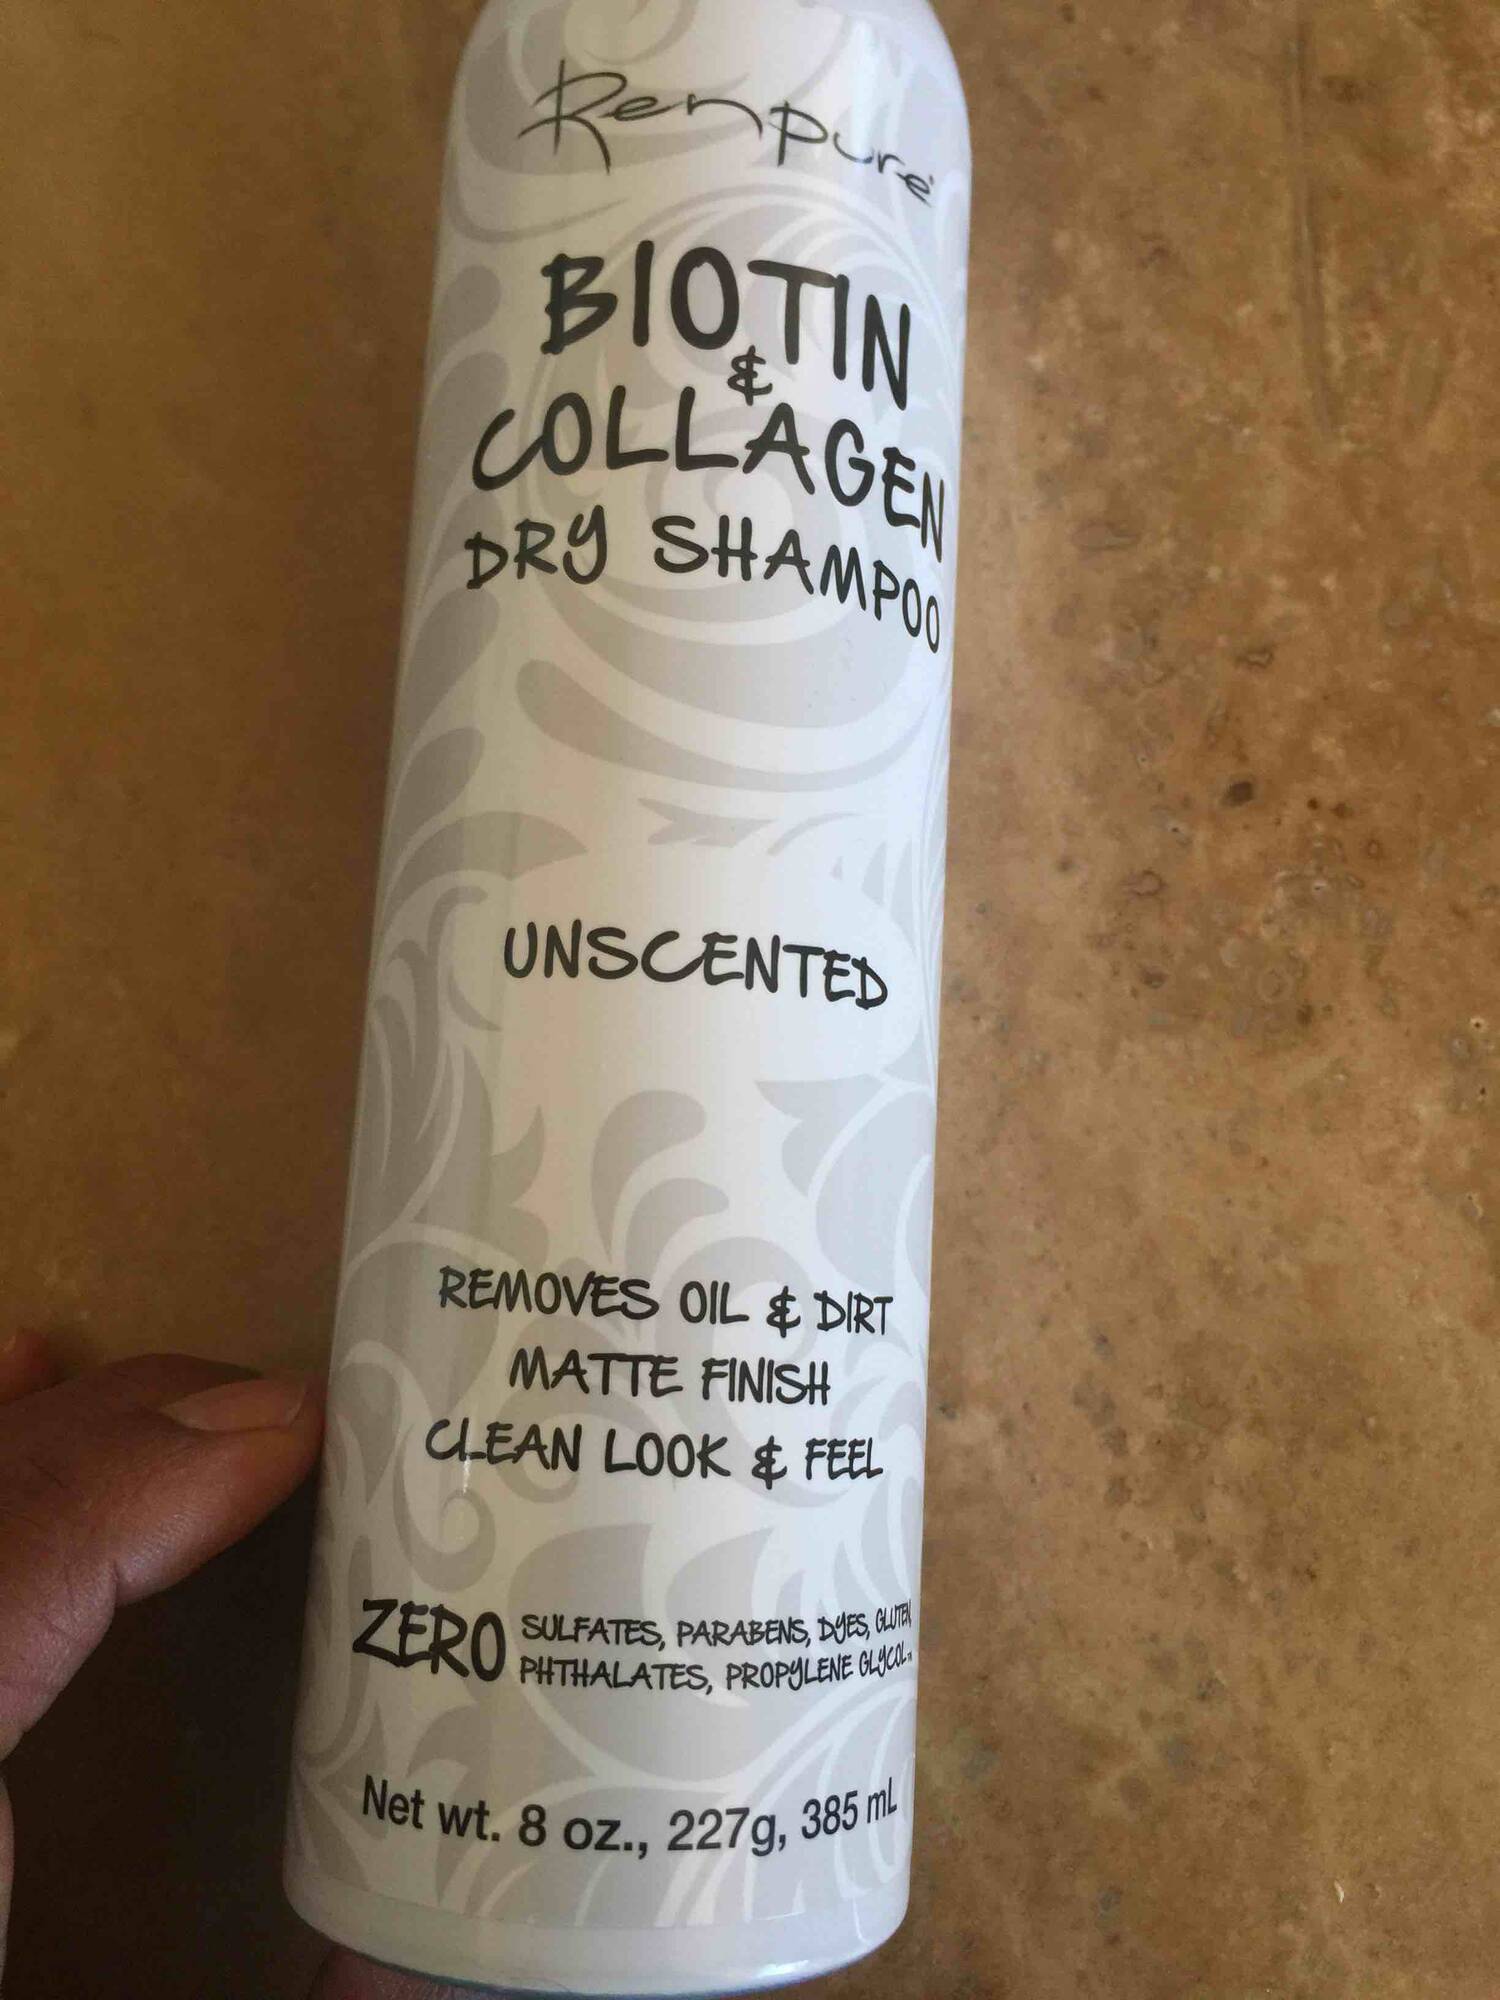 RENPURE - Biotin & collagen dry shampoo